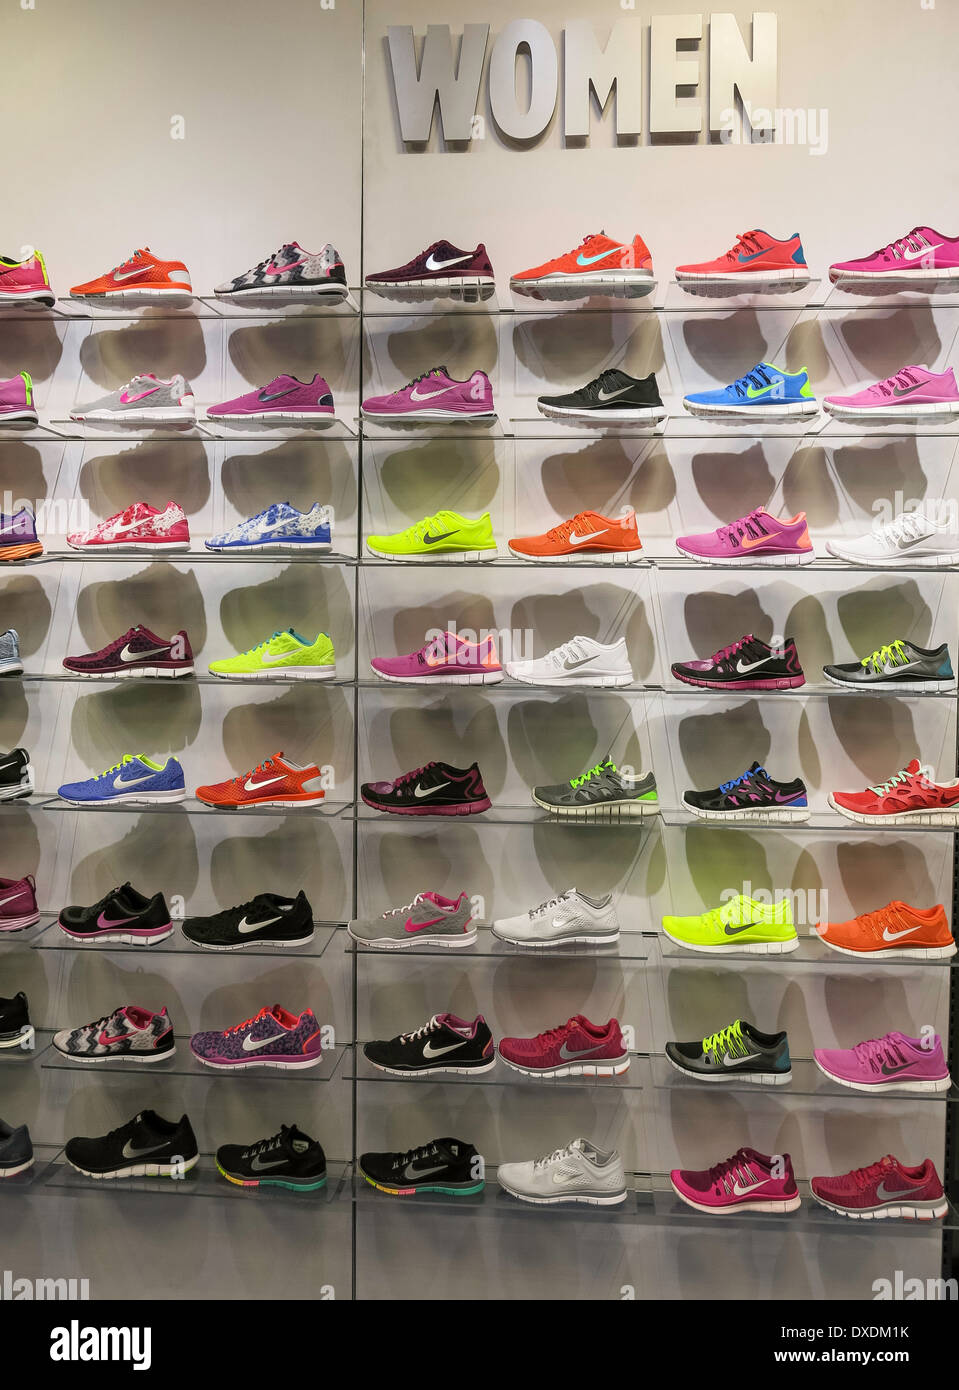 Nike zapatillas deportivas de mujer Muro, Locker, Plaza, Tampa, Florida, Fotografía de stock -